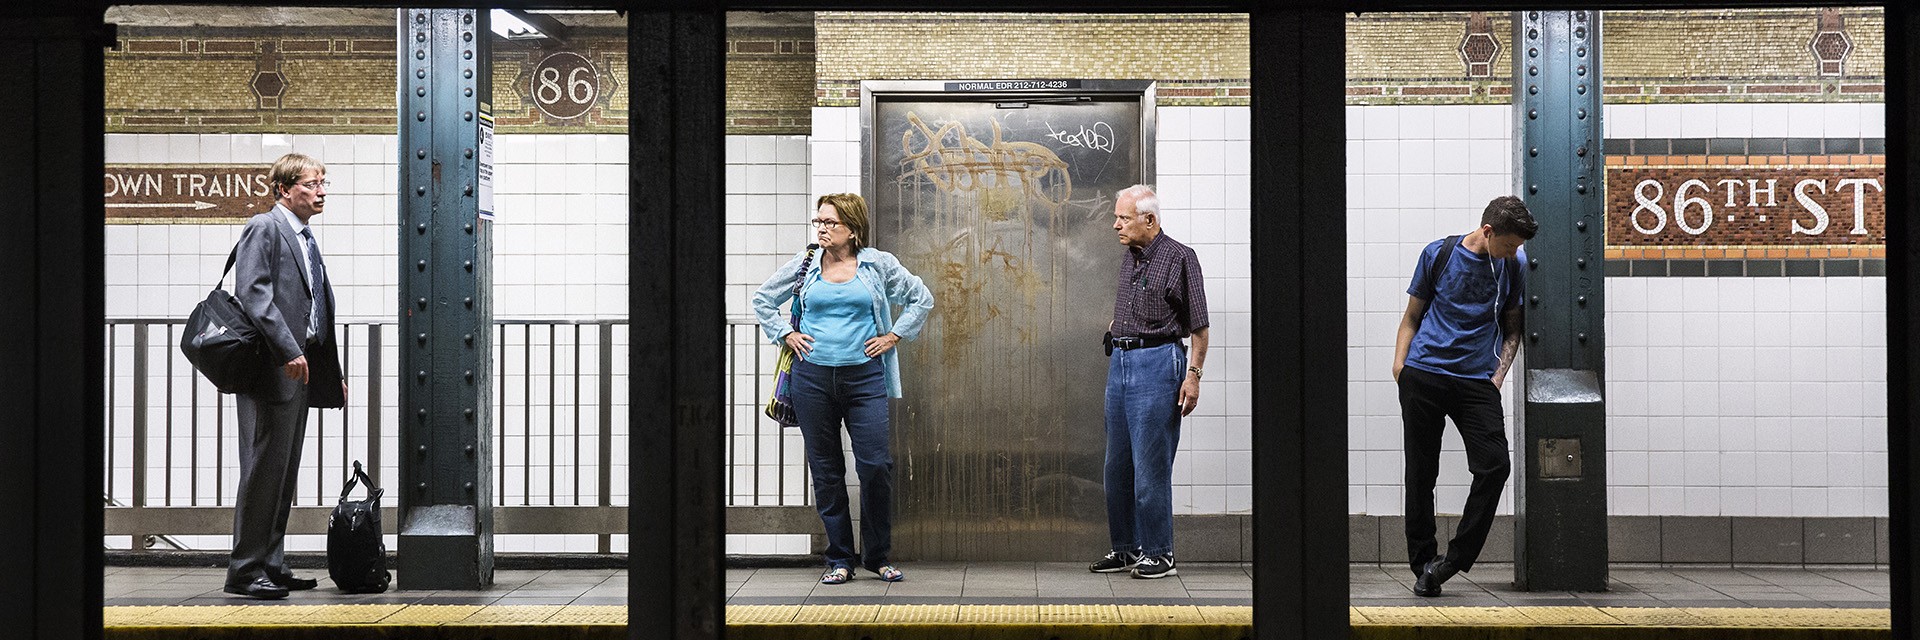 Из серии Платформы. Станция Нью-Йоркского метрополитена 86-я улица. Фотограф Натан Двир